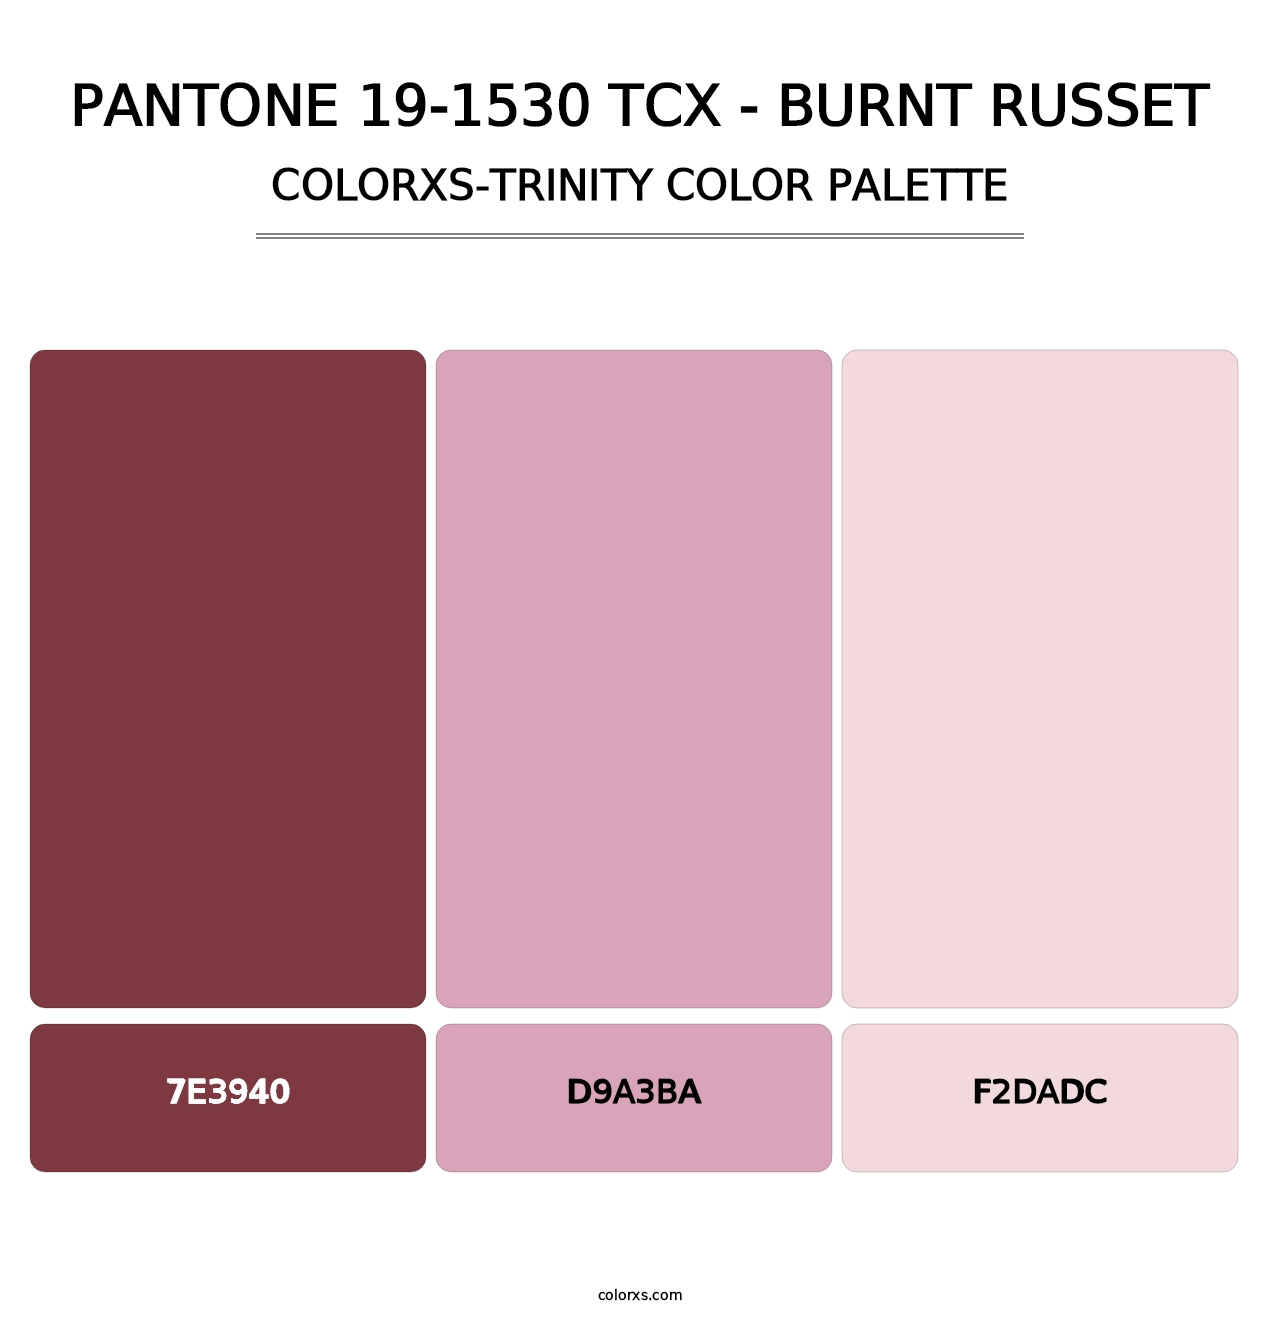 PANTONE 19-1530 TCX - Burnt Russet - Colorxs Trinity Palette